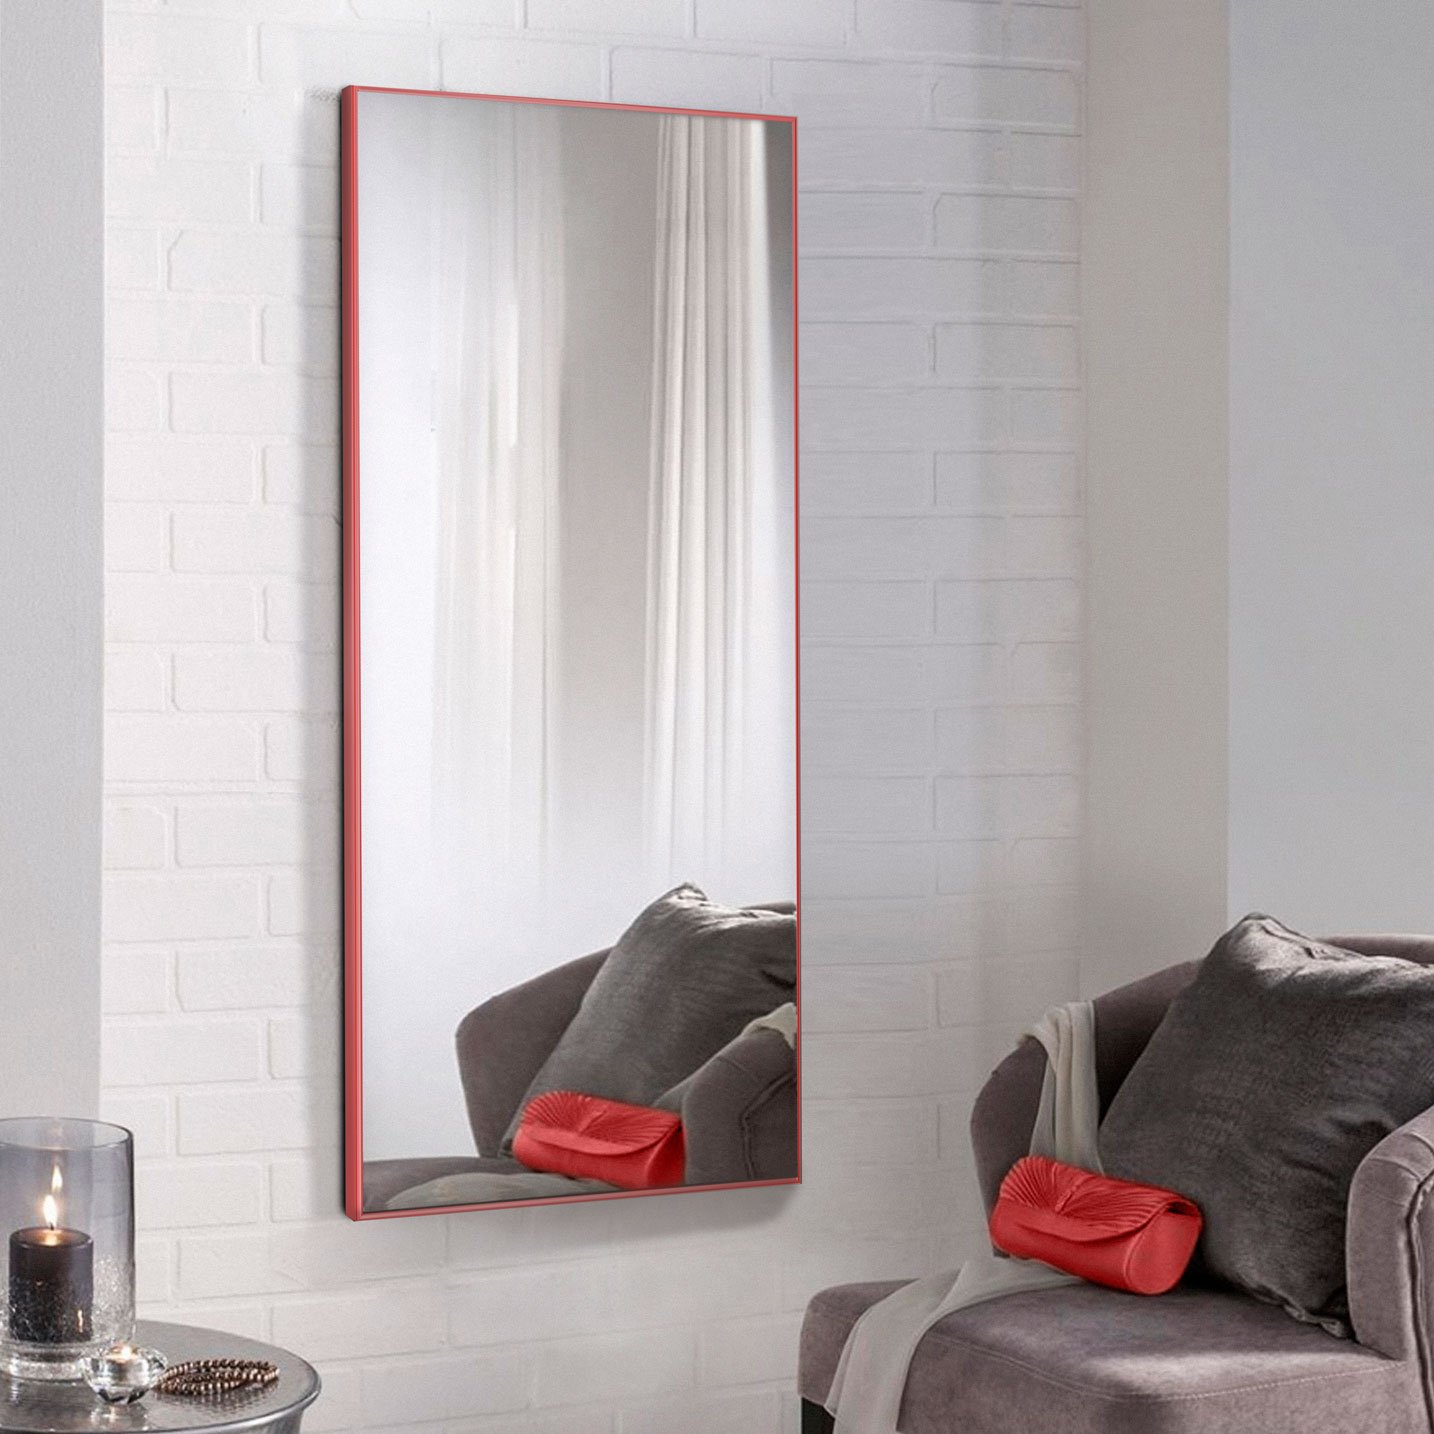 Многофункциональное зеркало настенное, модель Alum Red